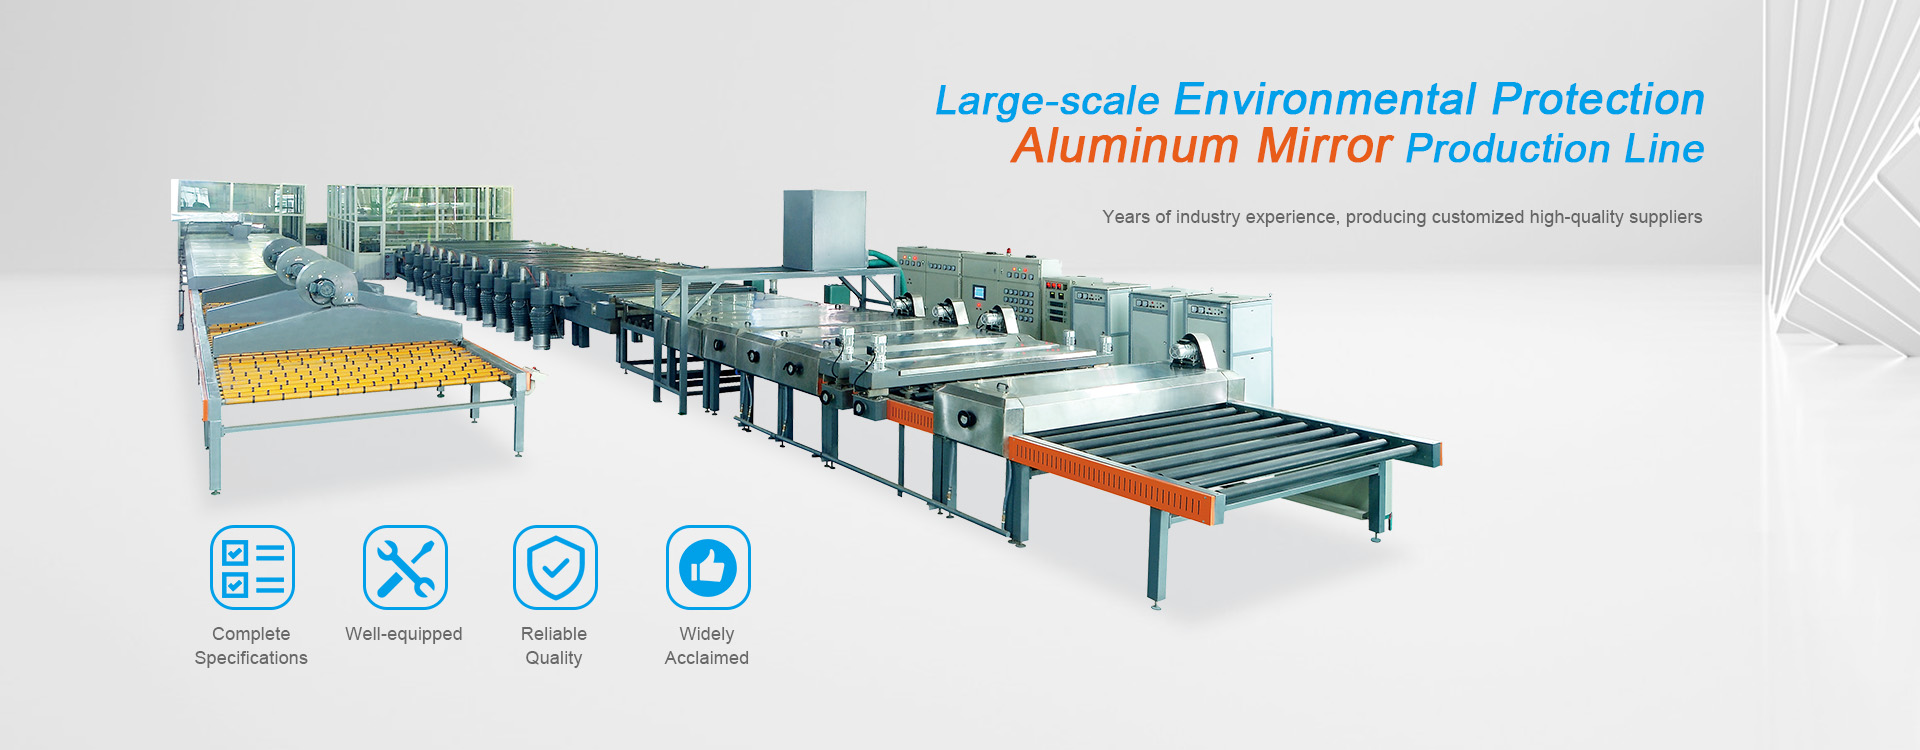 Tillverkare av aluminiumspegelvakuumbeläggningsmaskin